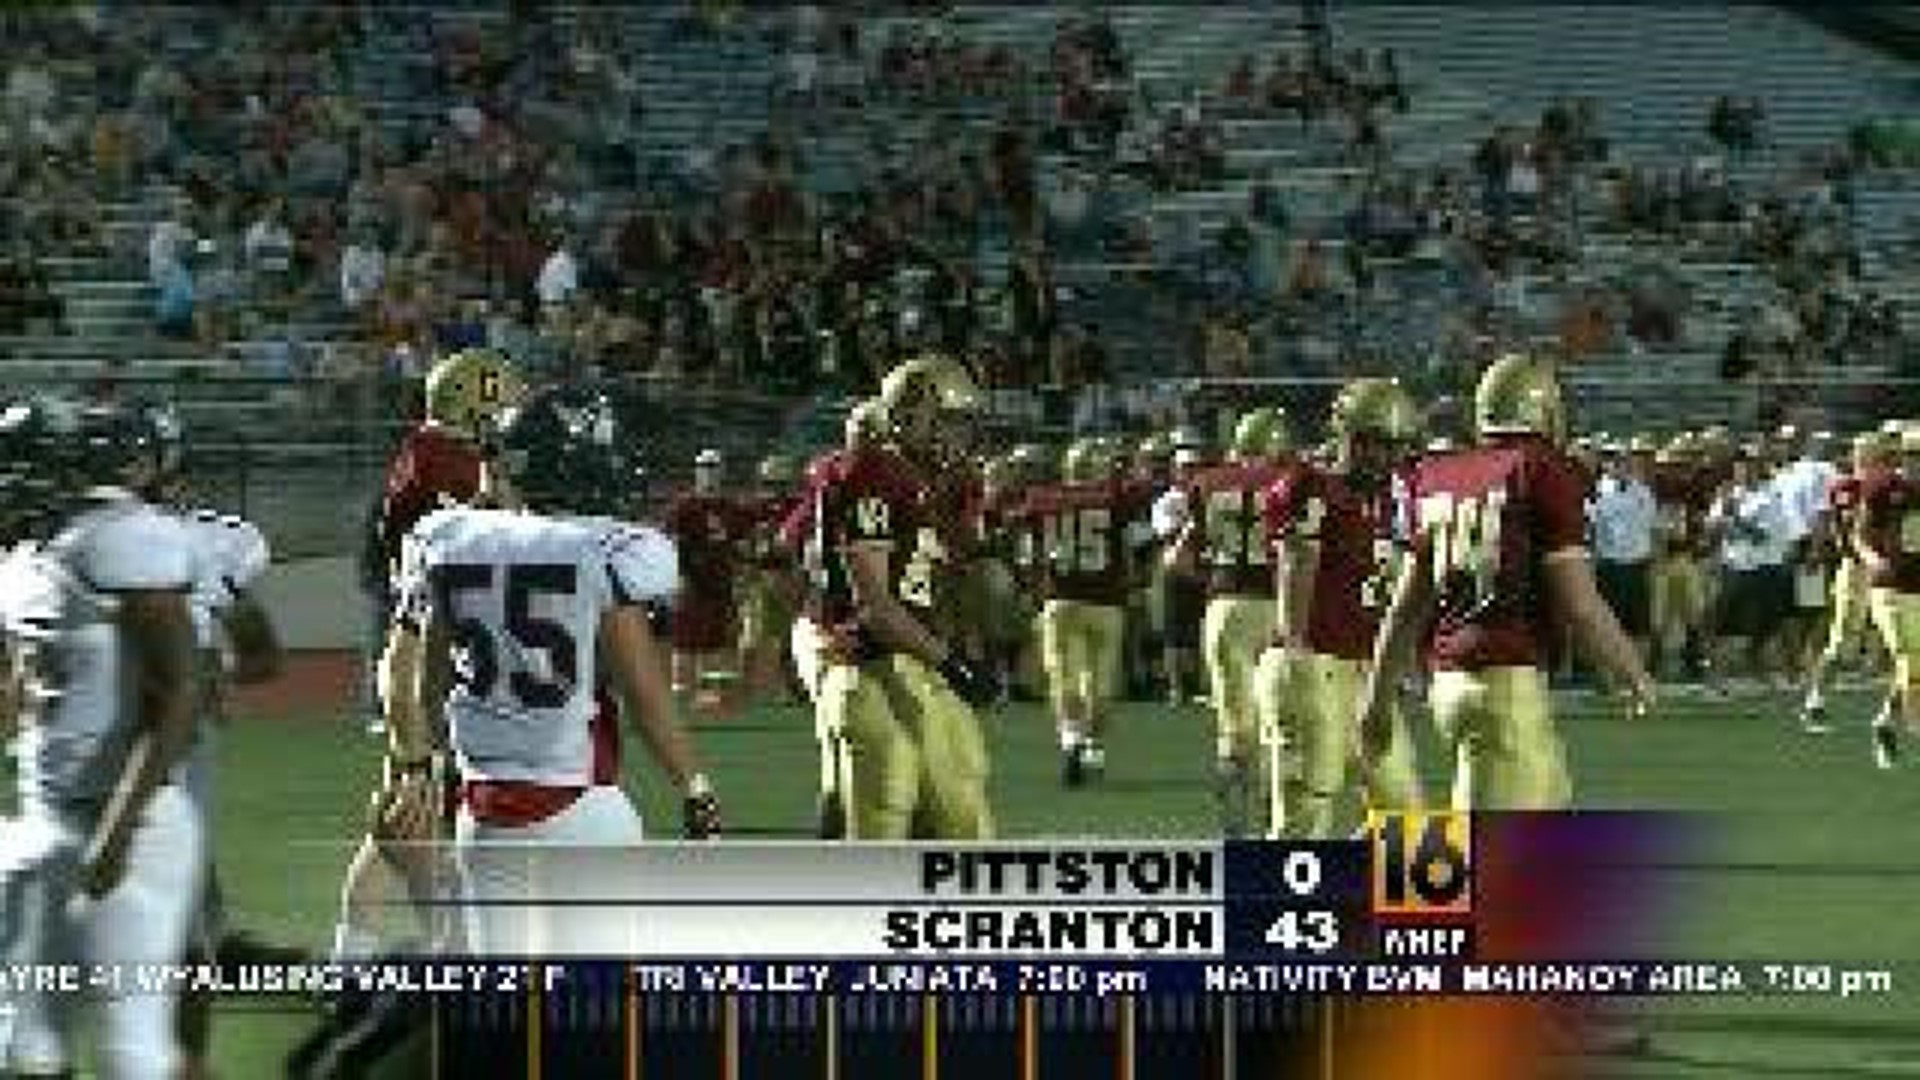 Pittston vs. Scranton